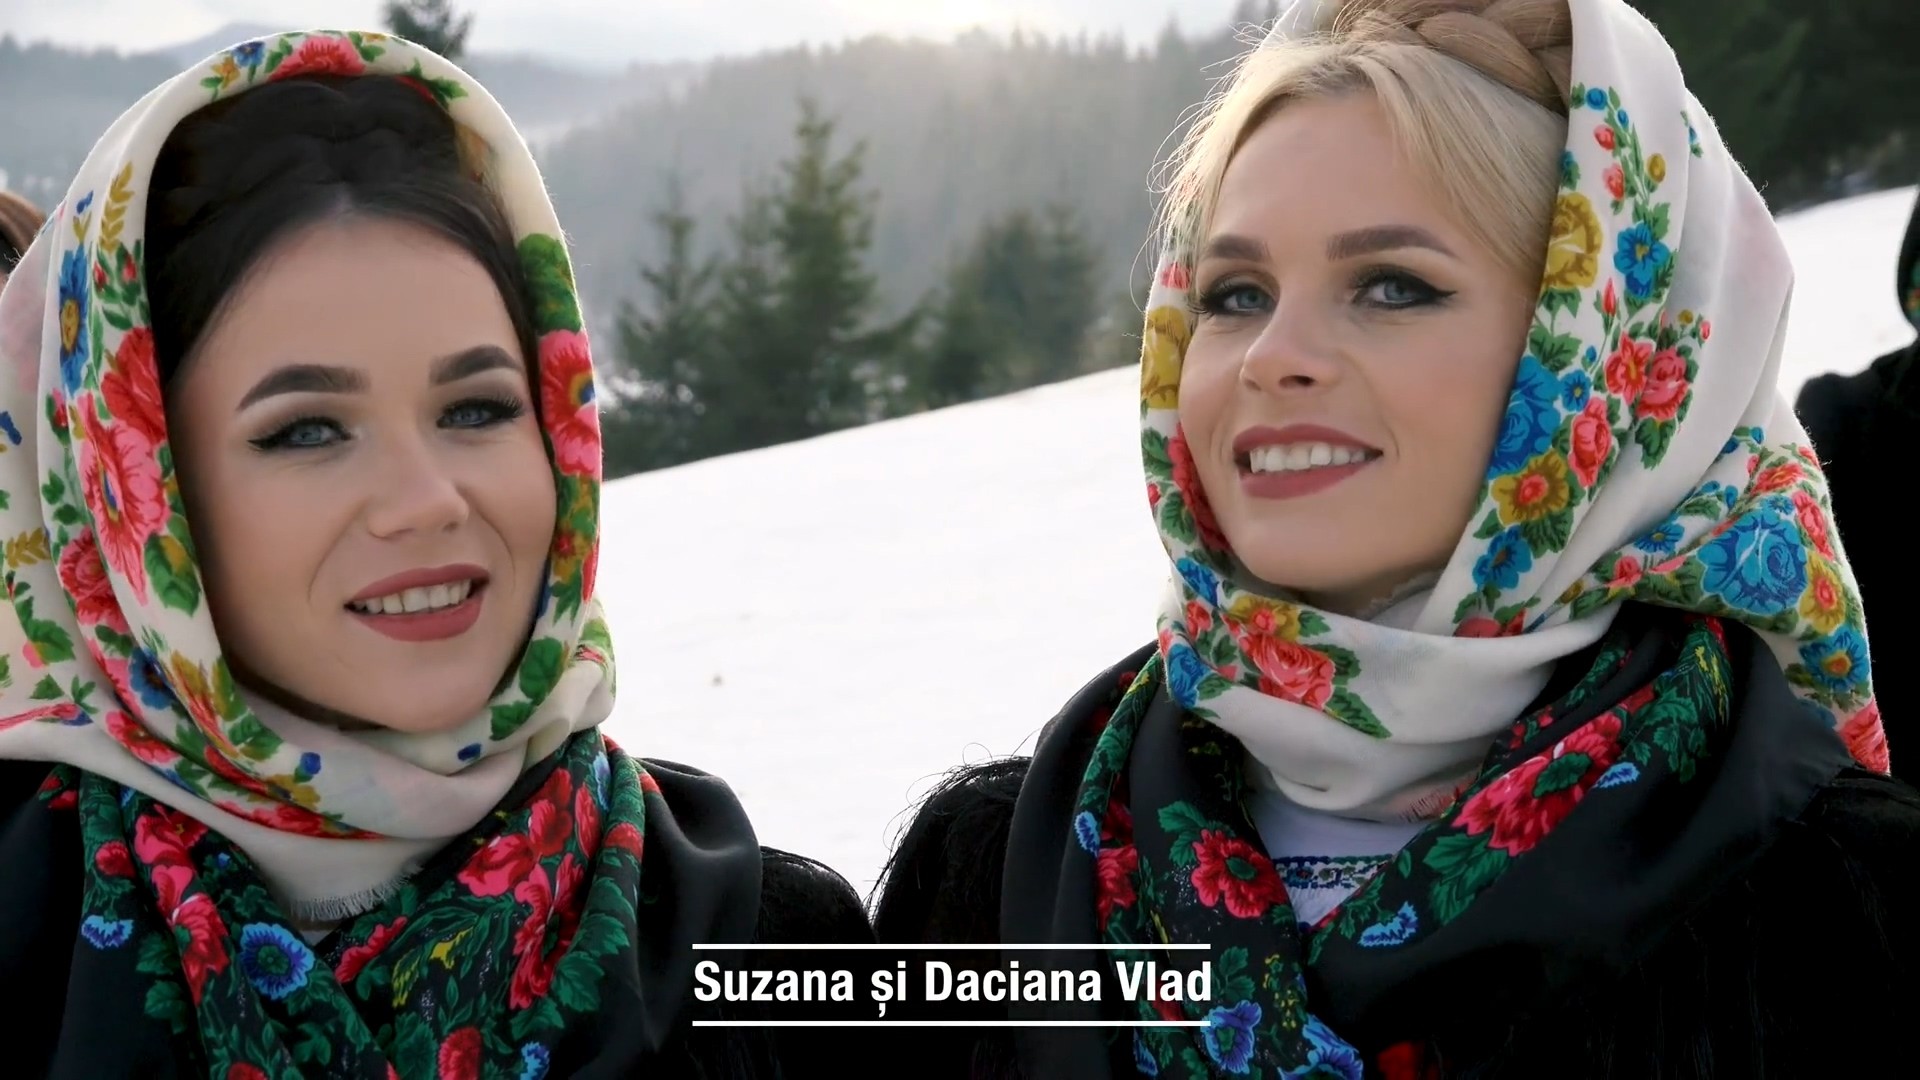 Suzana și Daciana Vlad, Iulia Bucur și Florina Oprea Sub fereastra la om bun Versuri